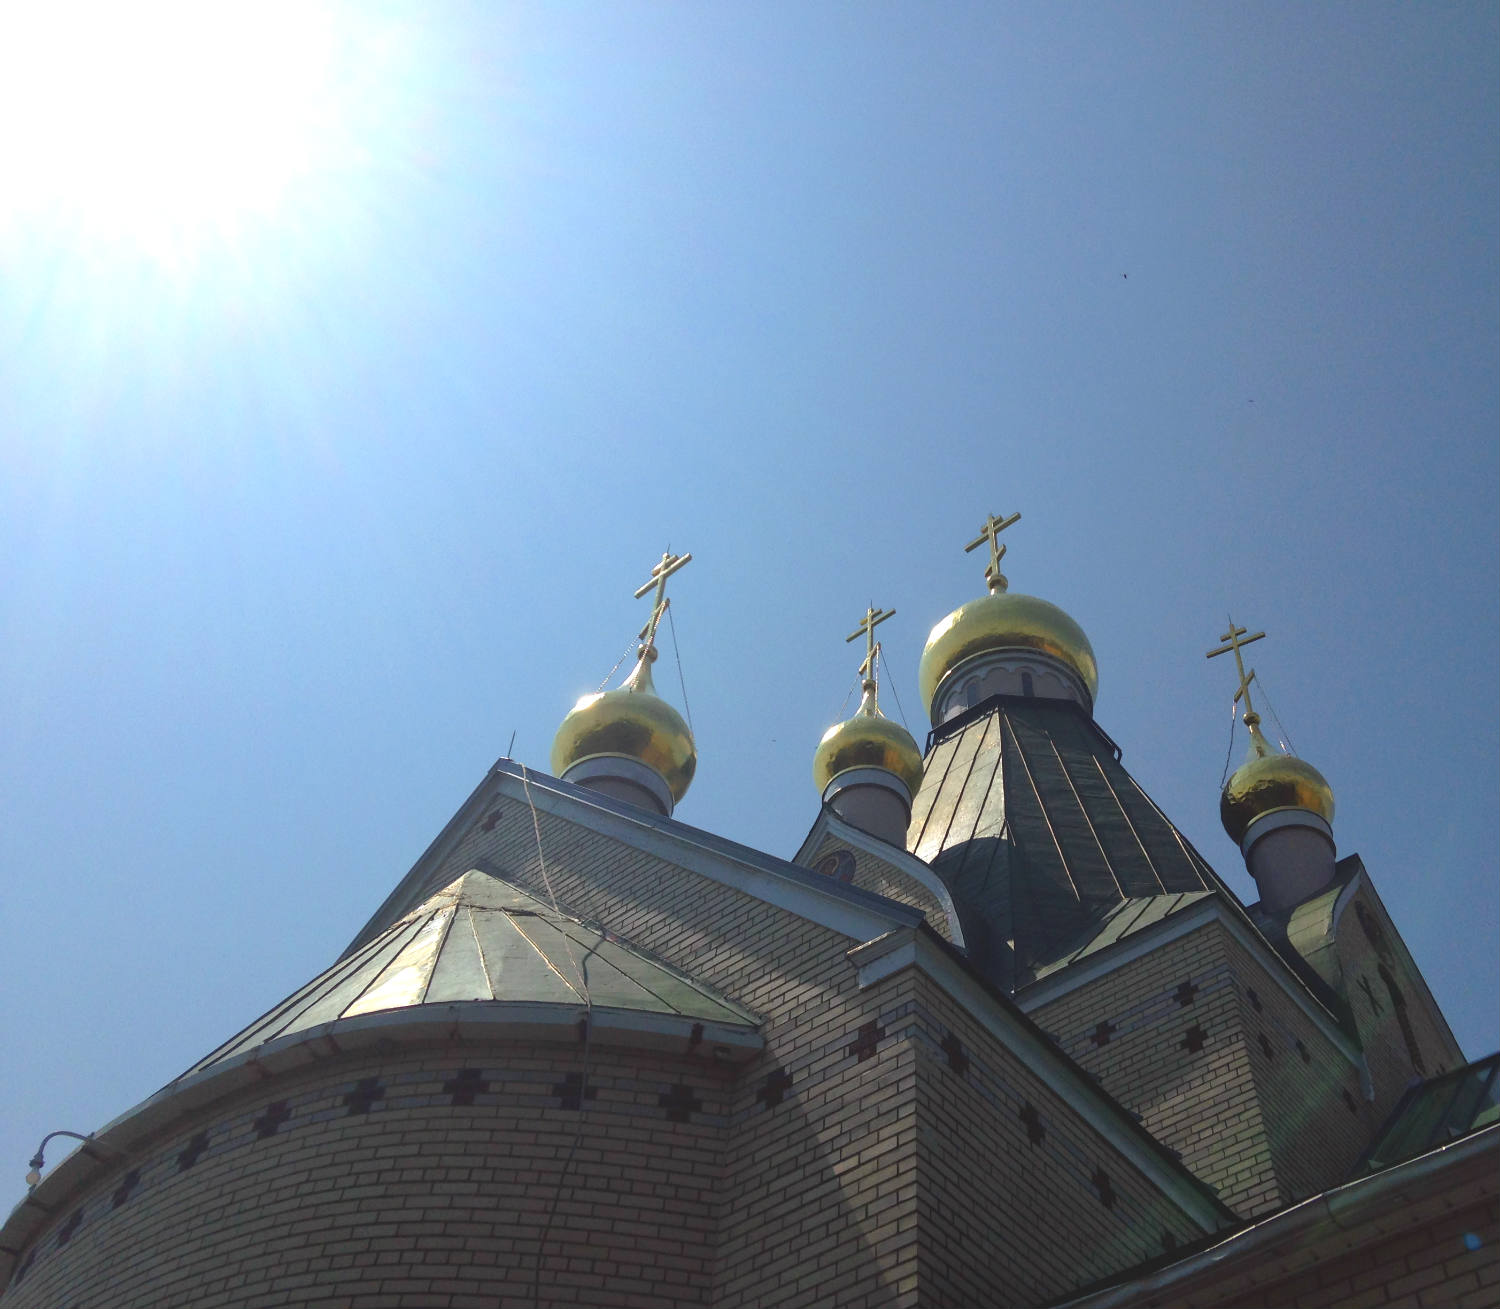 Holy Trinity Monastery - Jordanville, NY Church #1 Onion Domes and Crosses